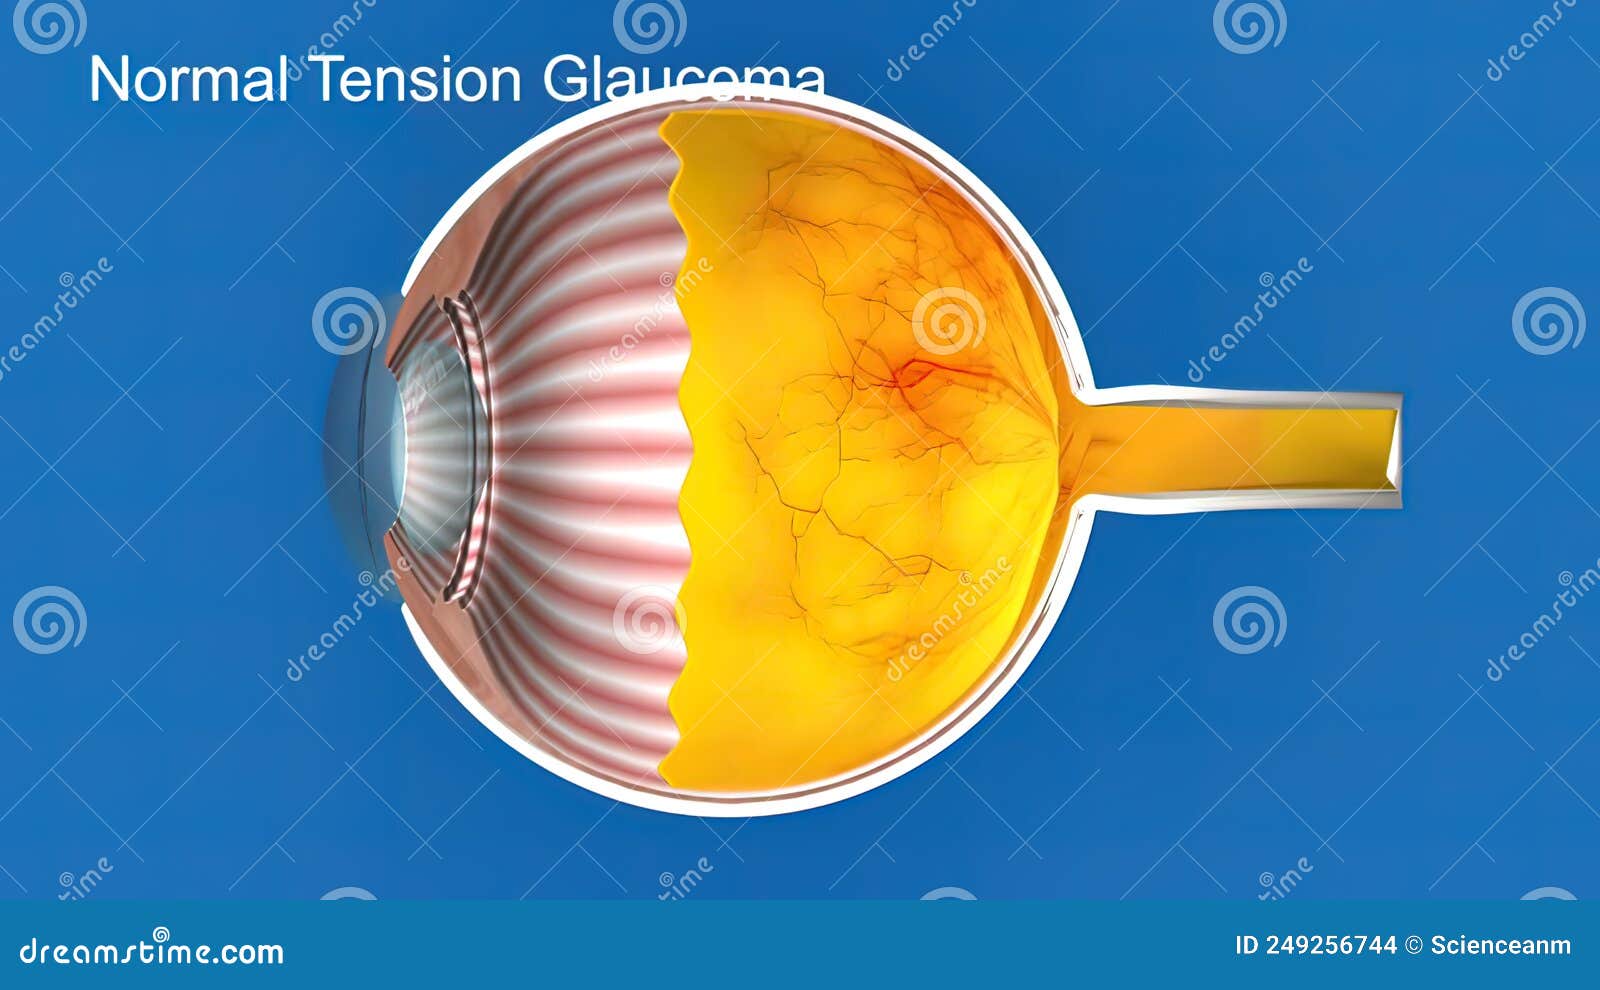 Normal Tension Glaucoma có thể là vấn đề sức khỏe nhạy cảm và mất điểm chức năng quan trọng đối với thị giác. Hình ảnh về Normal Tension Glaucoma sẽ giúp bạn hiểu rõ hơn về bệnh và và định hướng cho việc chăm sóc sức khỏe mắt một cách hiệu quả.